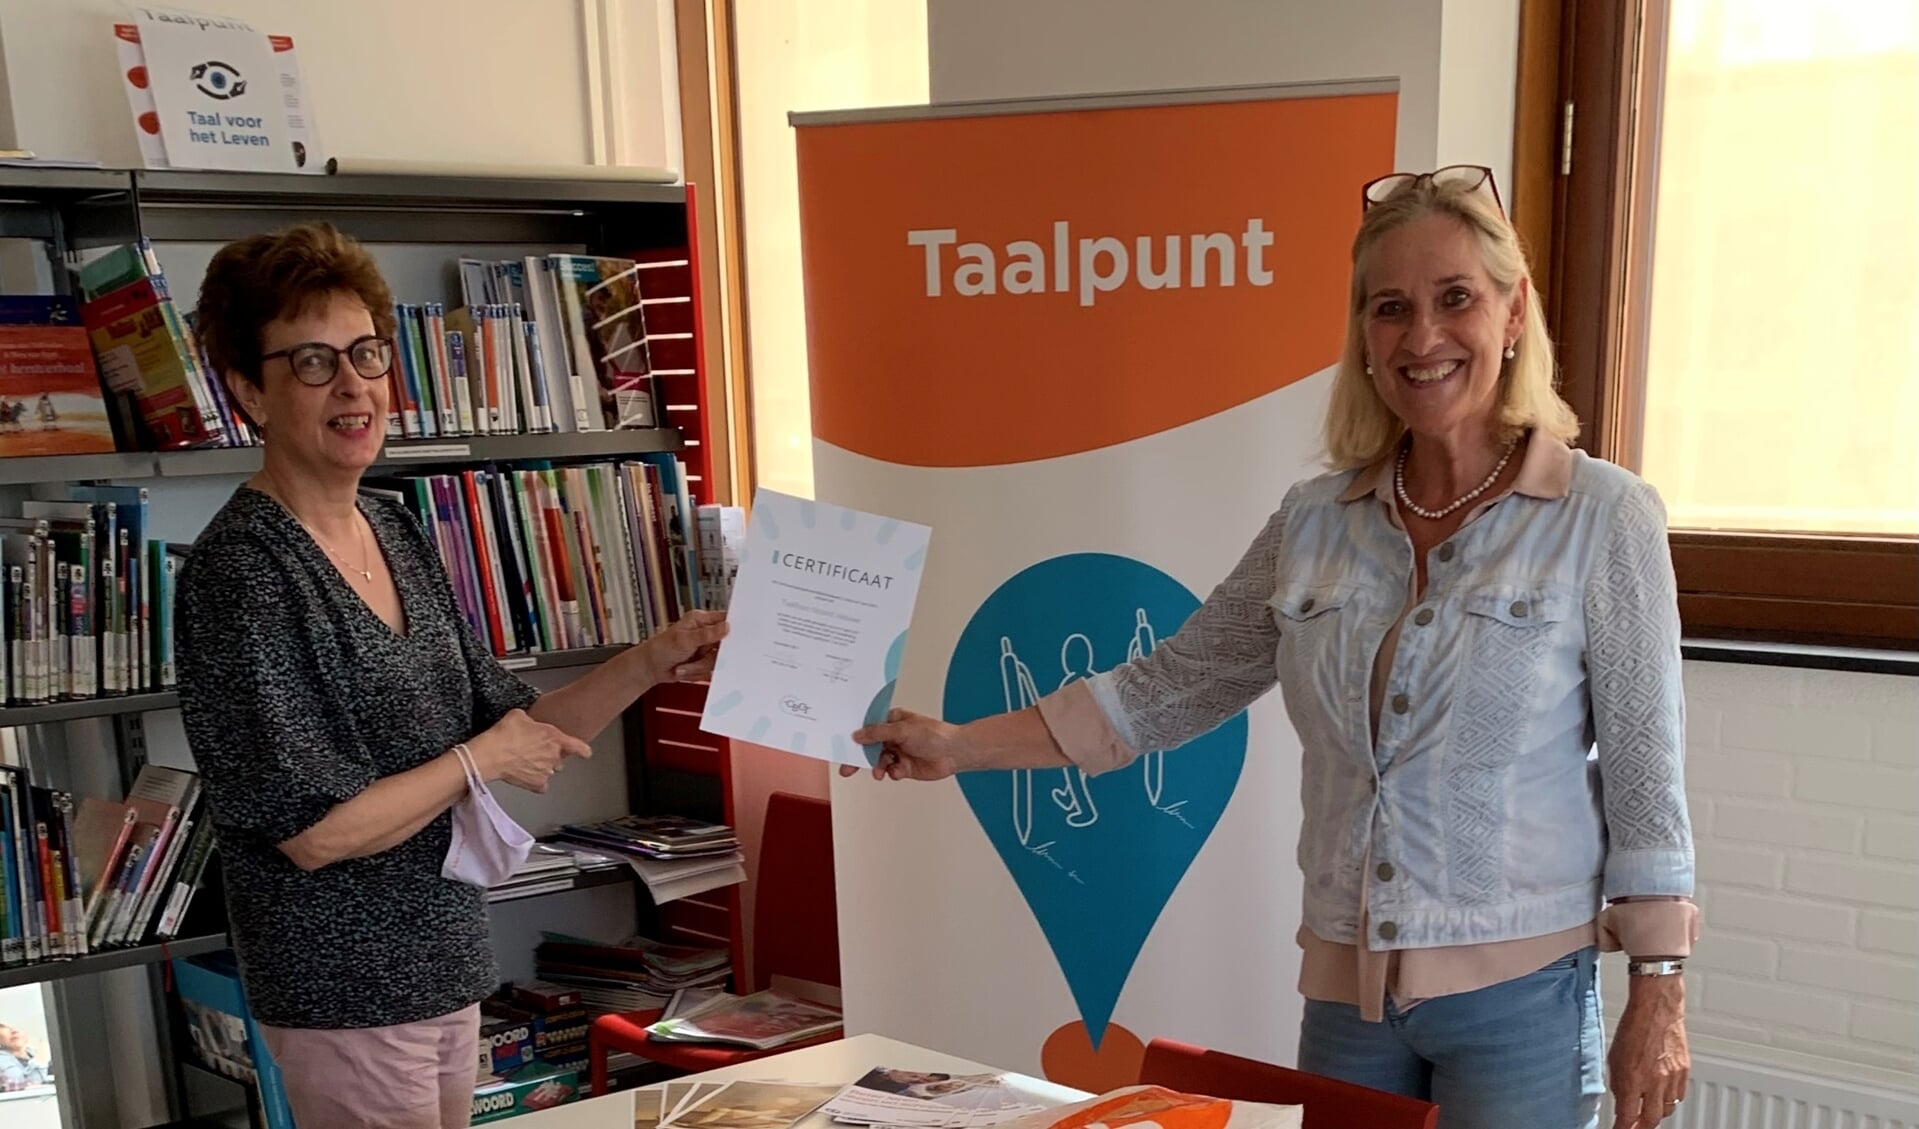 Bibliotheekdirecteur Hetty van de Weg en Taalpuntdocent Barrie Nitrauw tonen trots het behaalde certificaat